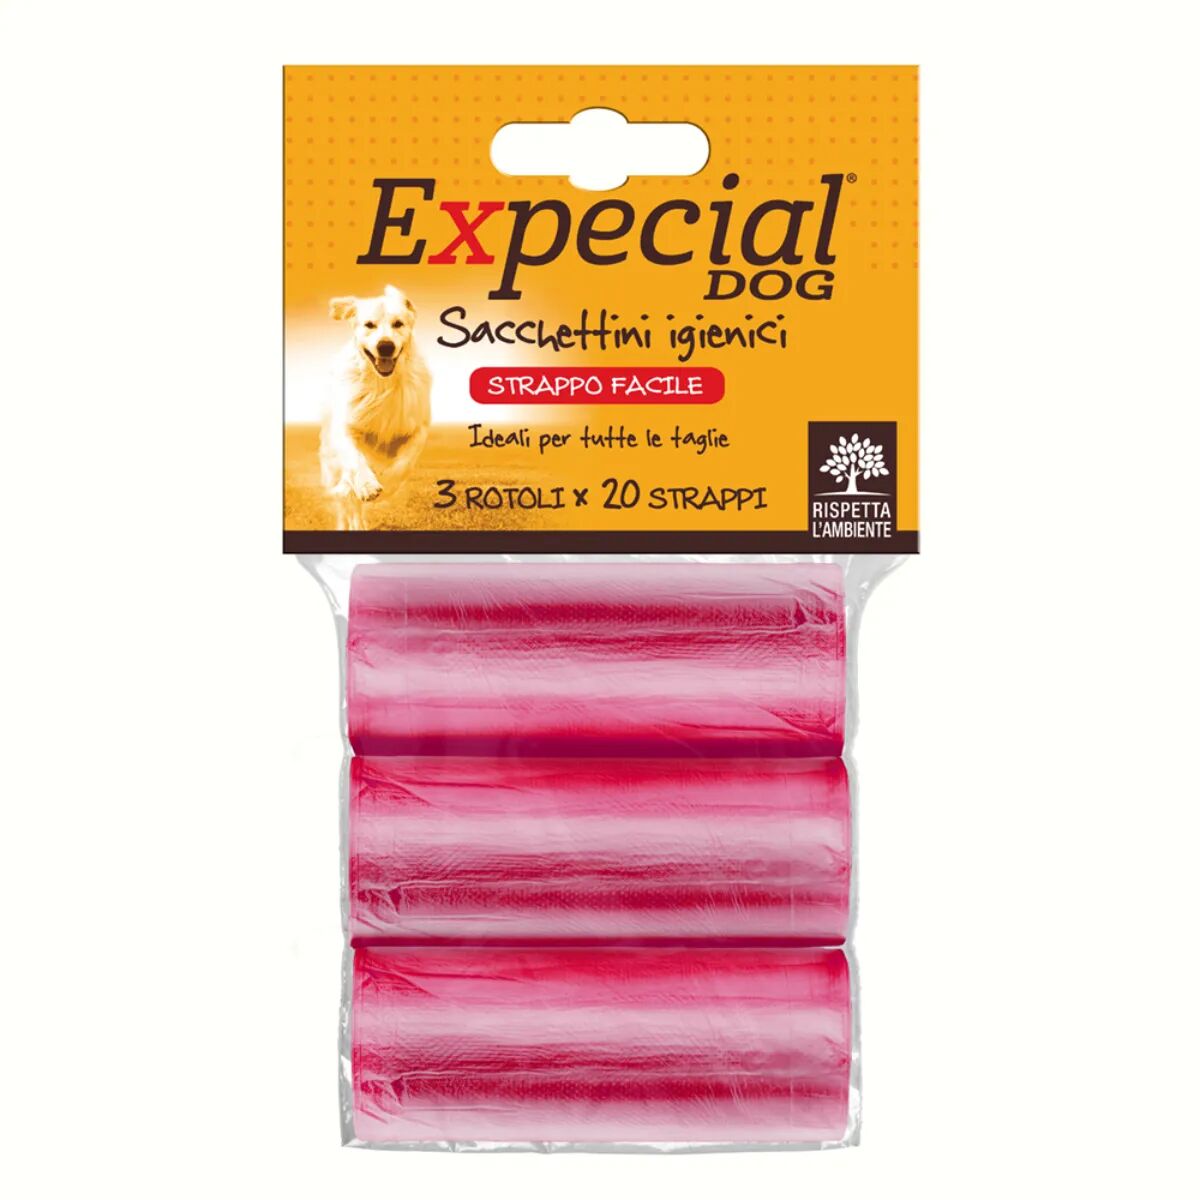 expecial sacchetti igienici rossi 3x20